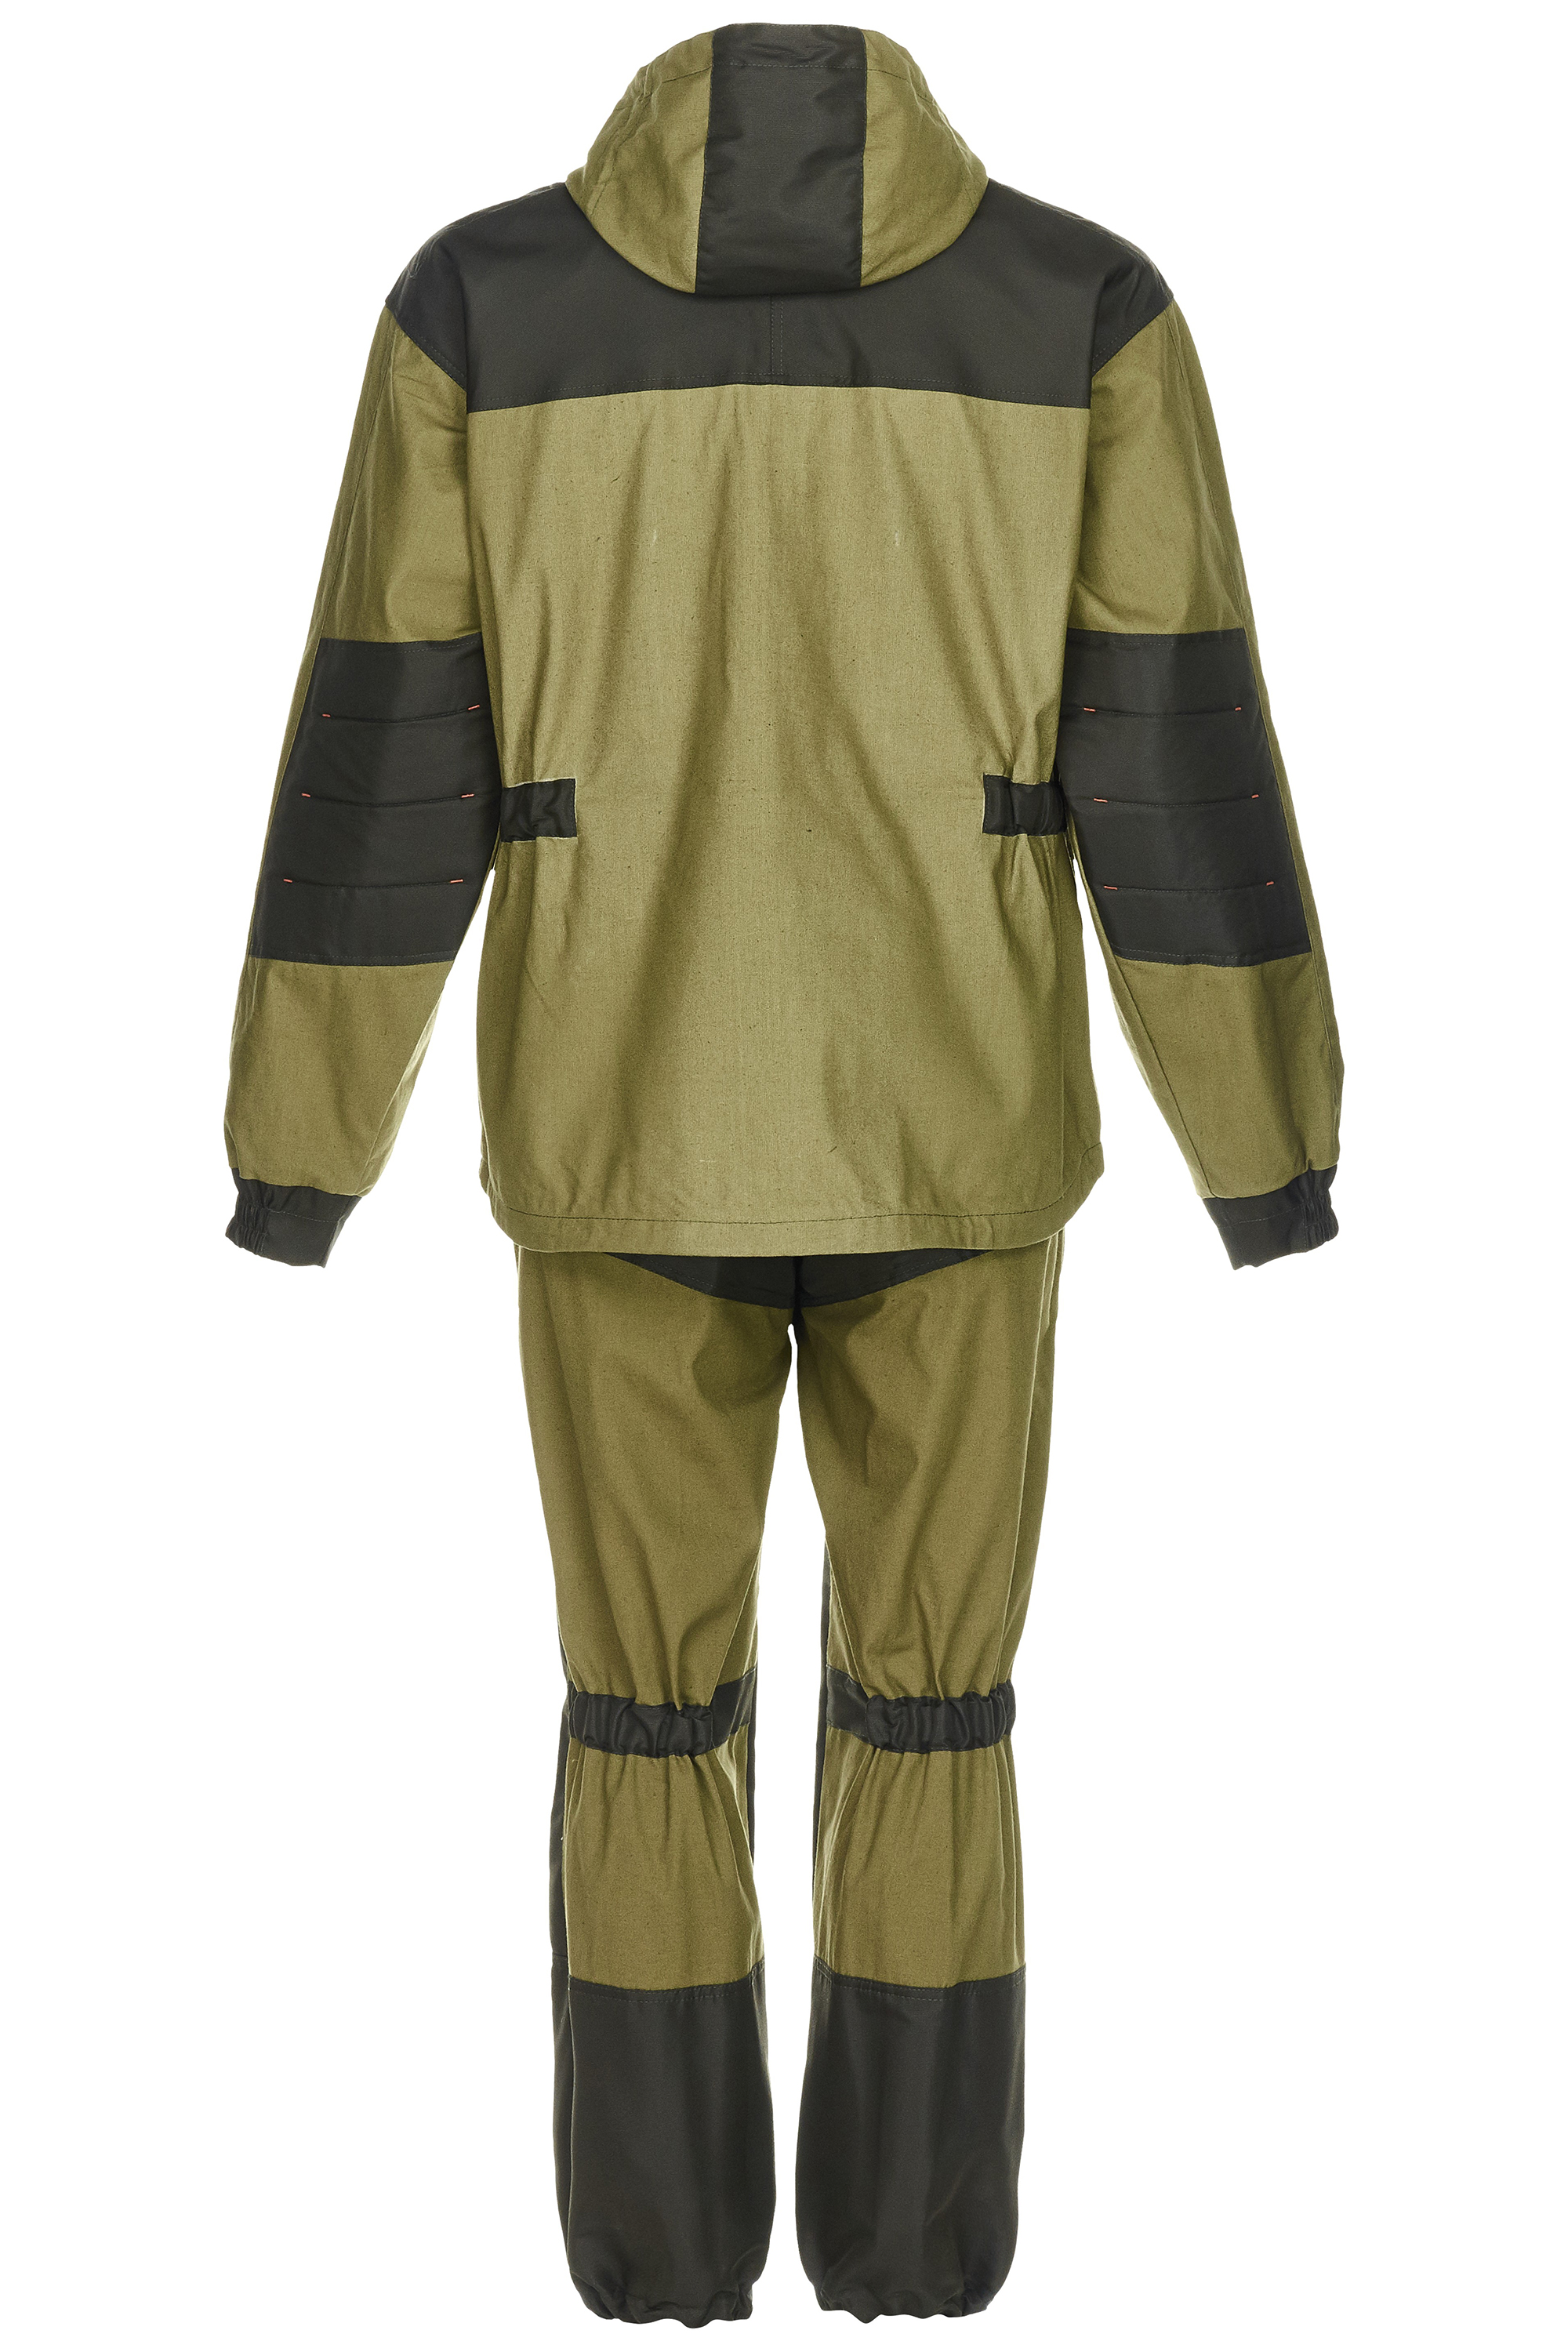 Летний костюм для рыбалки, рыболовная одежда (непромокаемая, дышащая, мембранная)